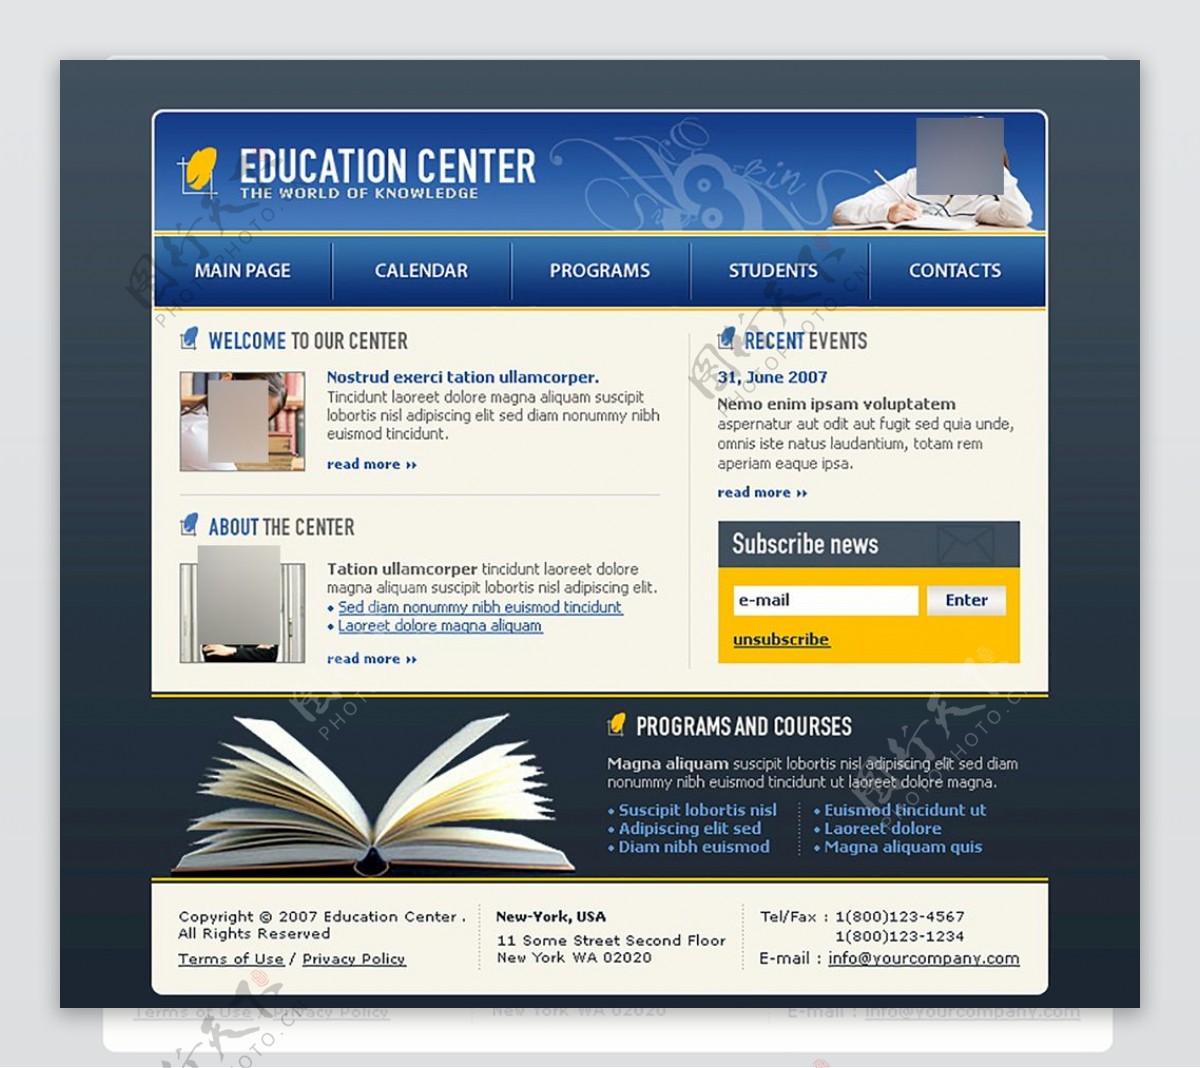 欧美教育网站模板